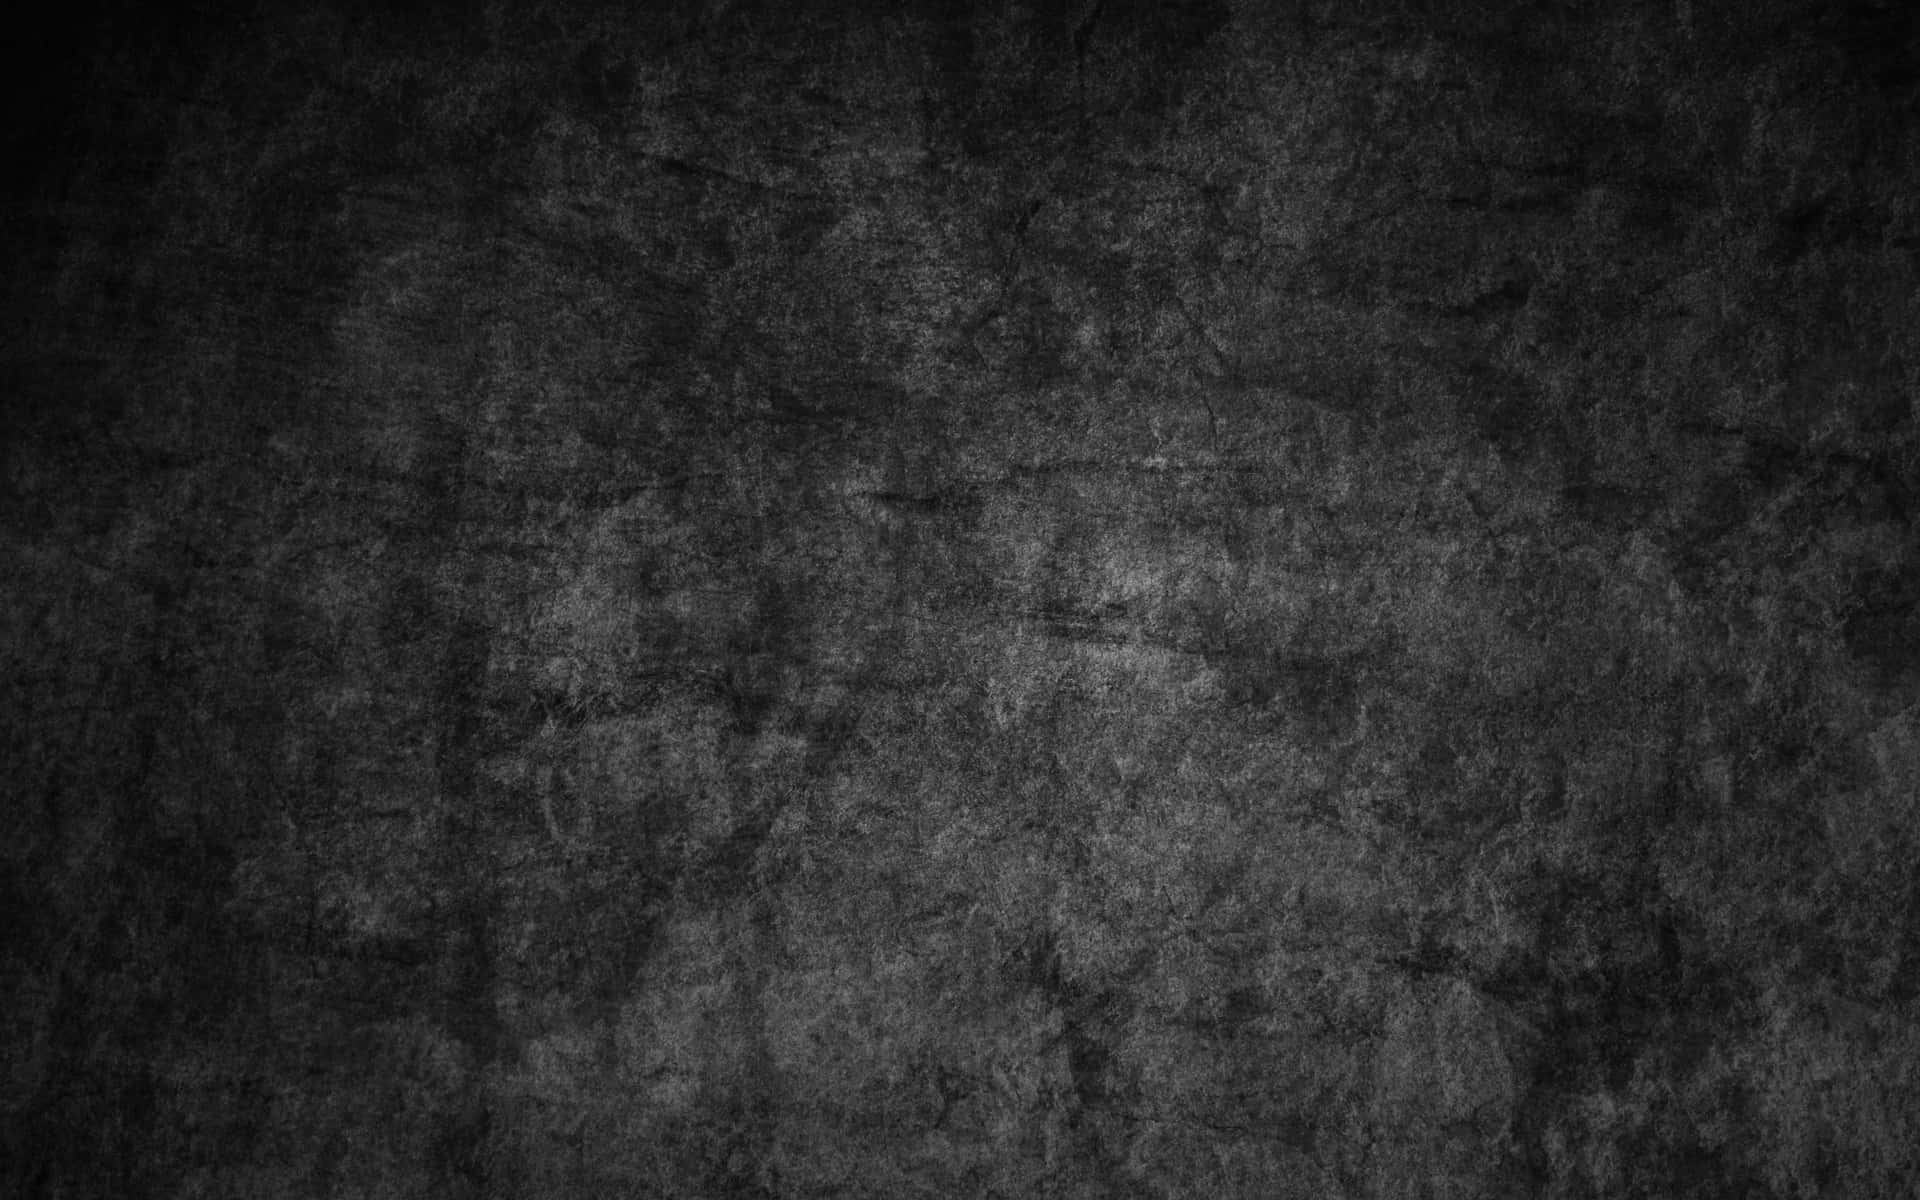 Black Grunge Texture Background